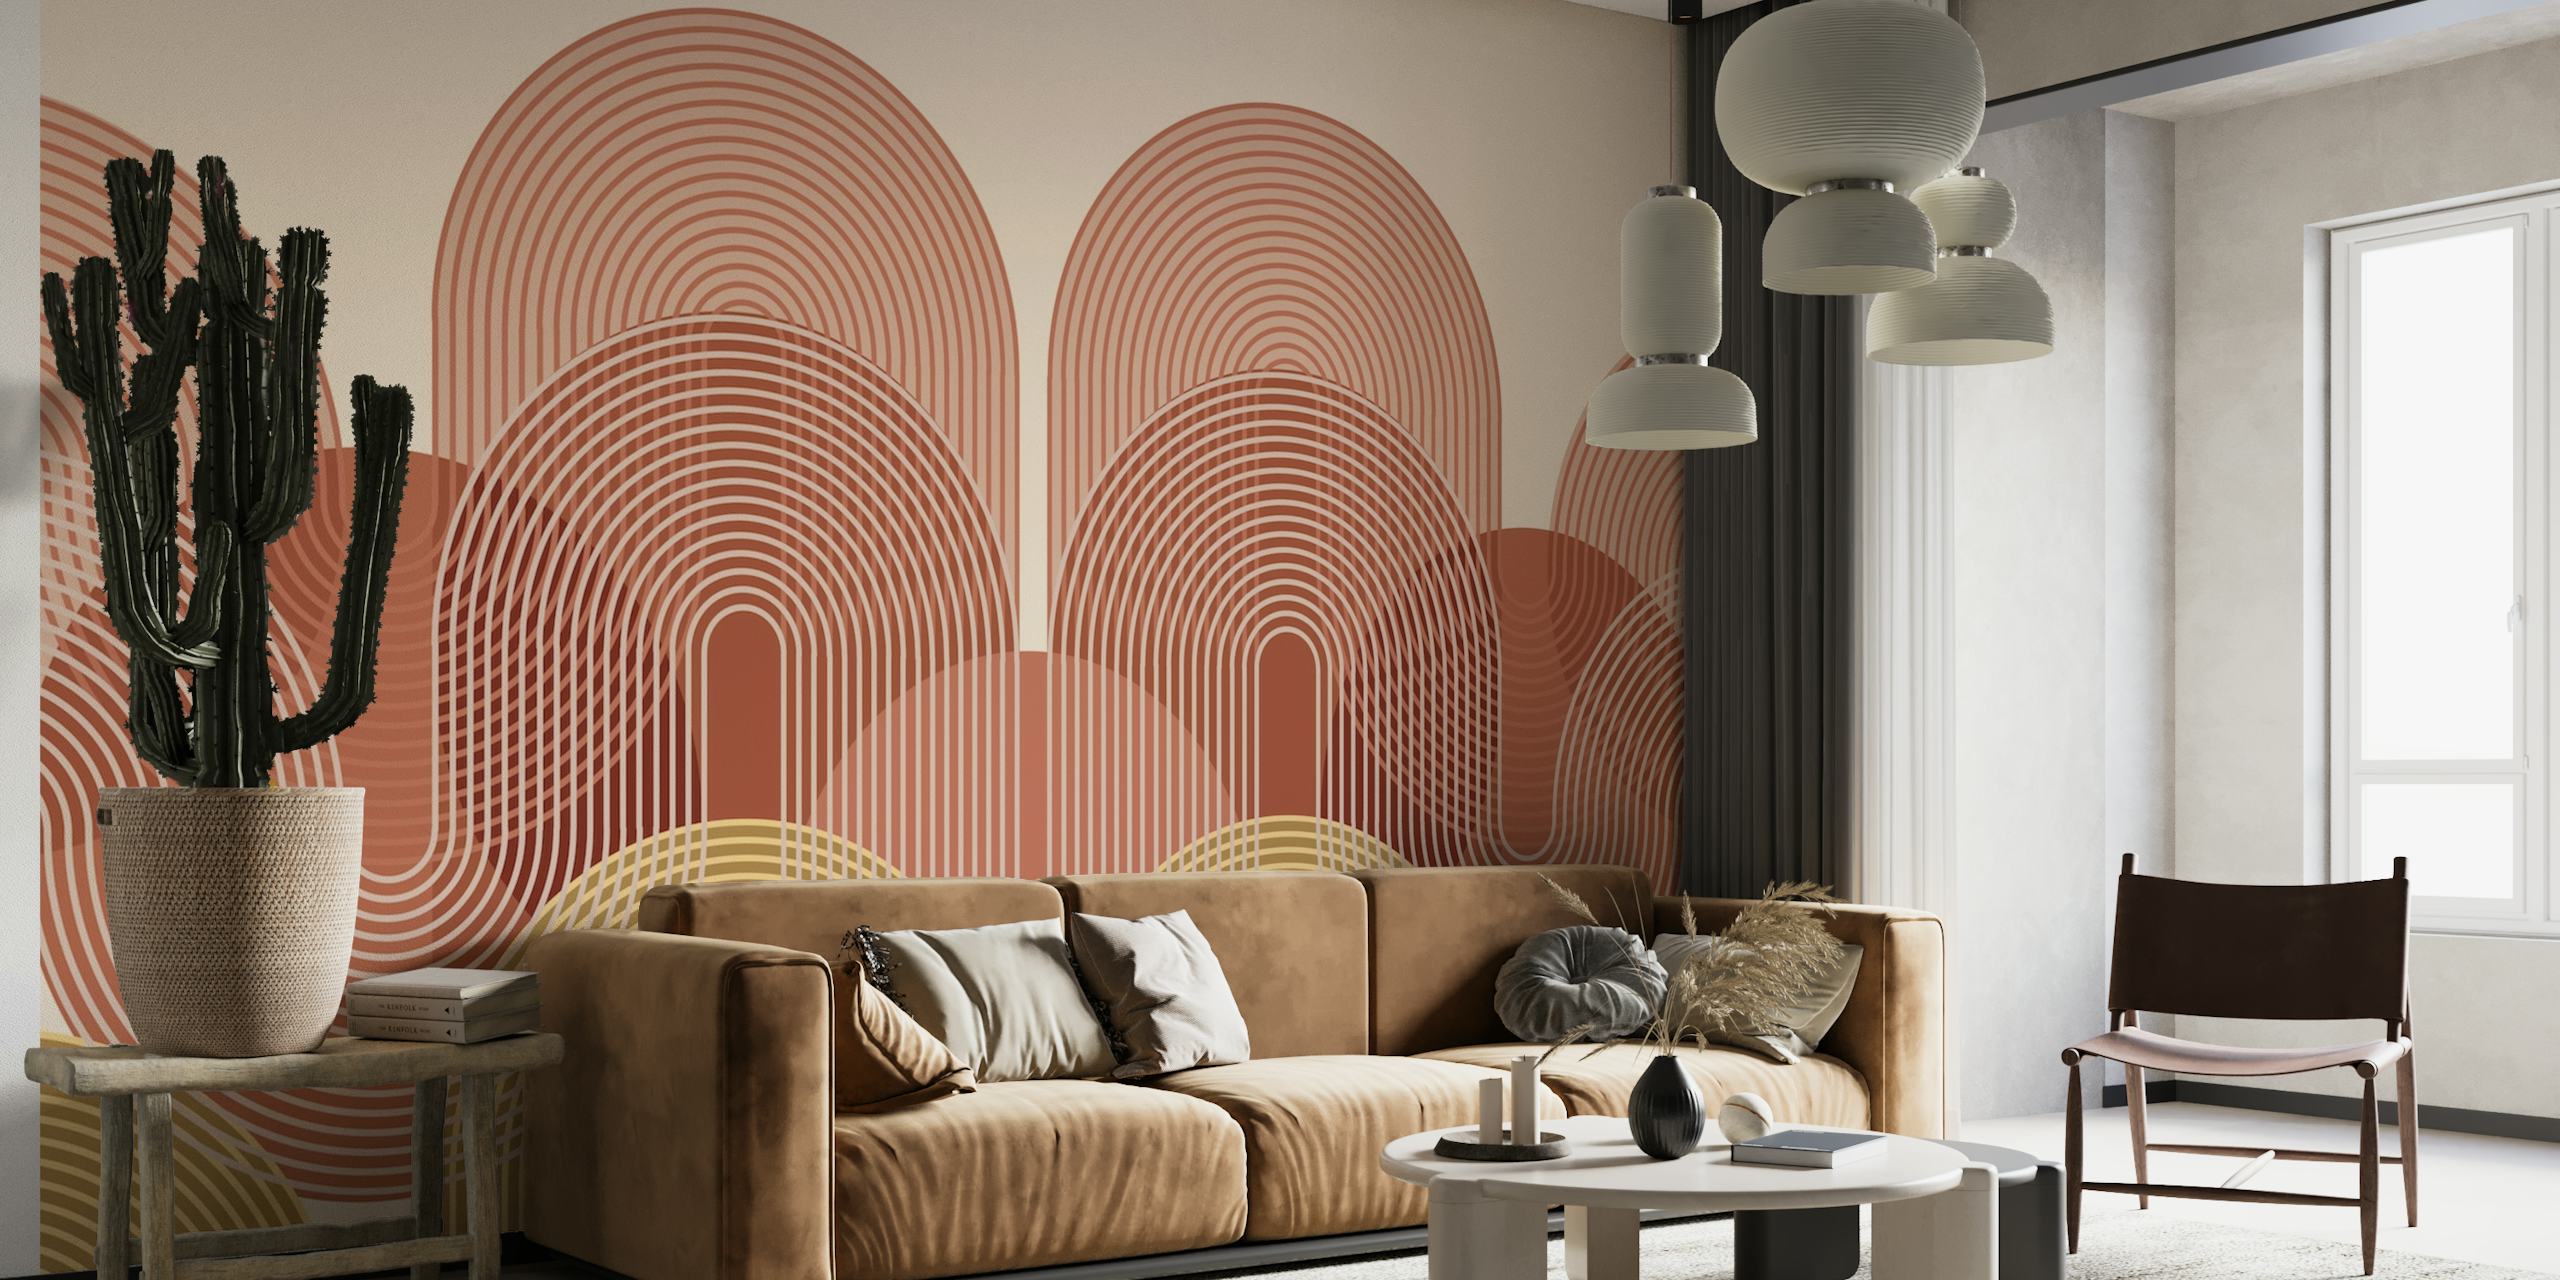 Décoration murale artistique avec arches abstraites et lignes de cercle aux tons chauds